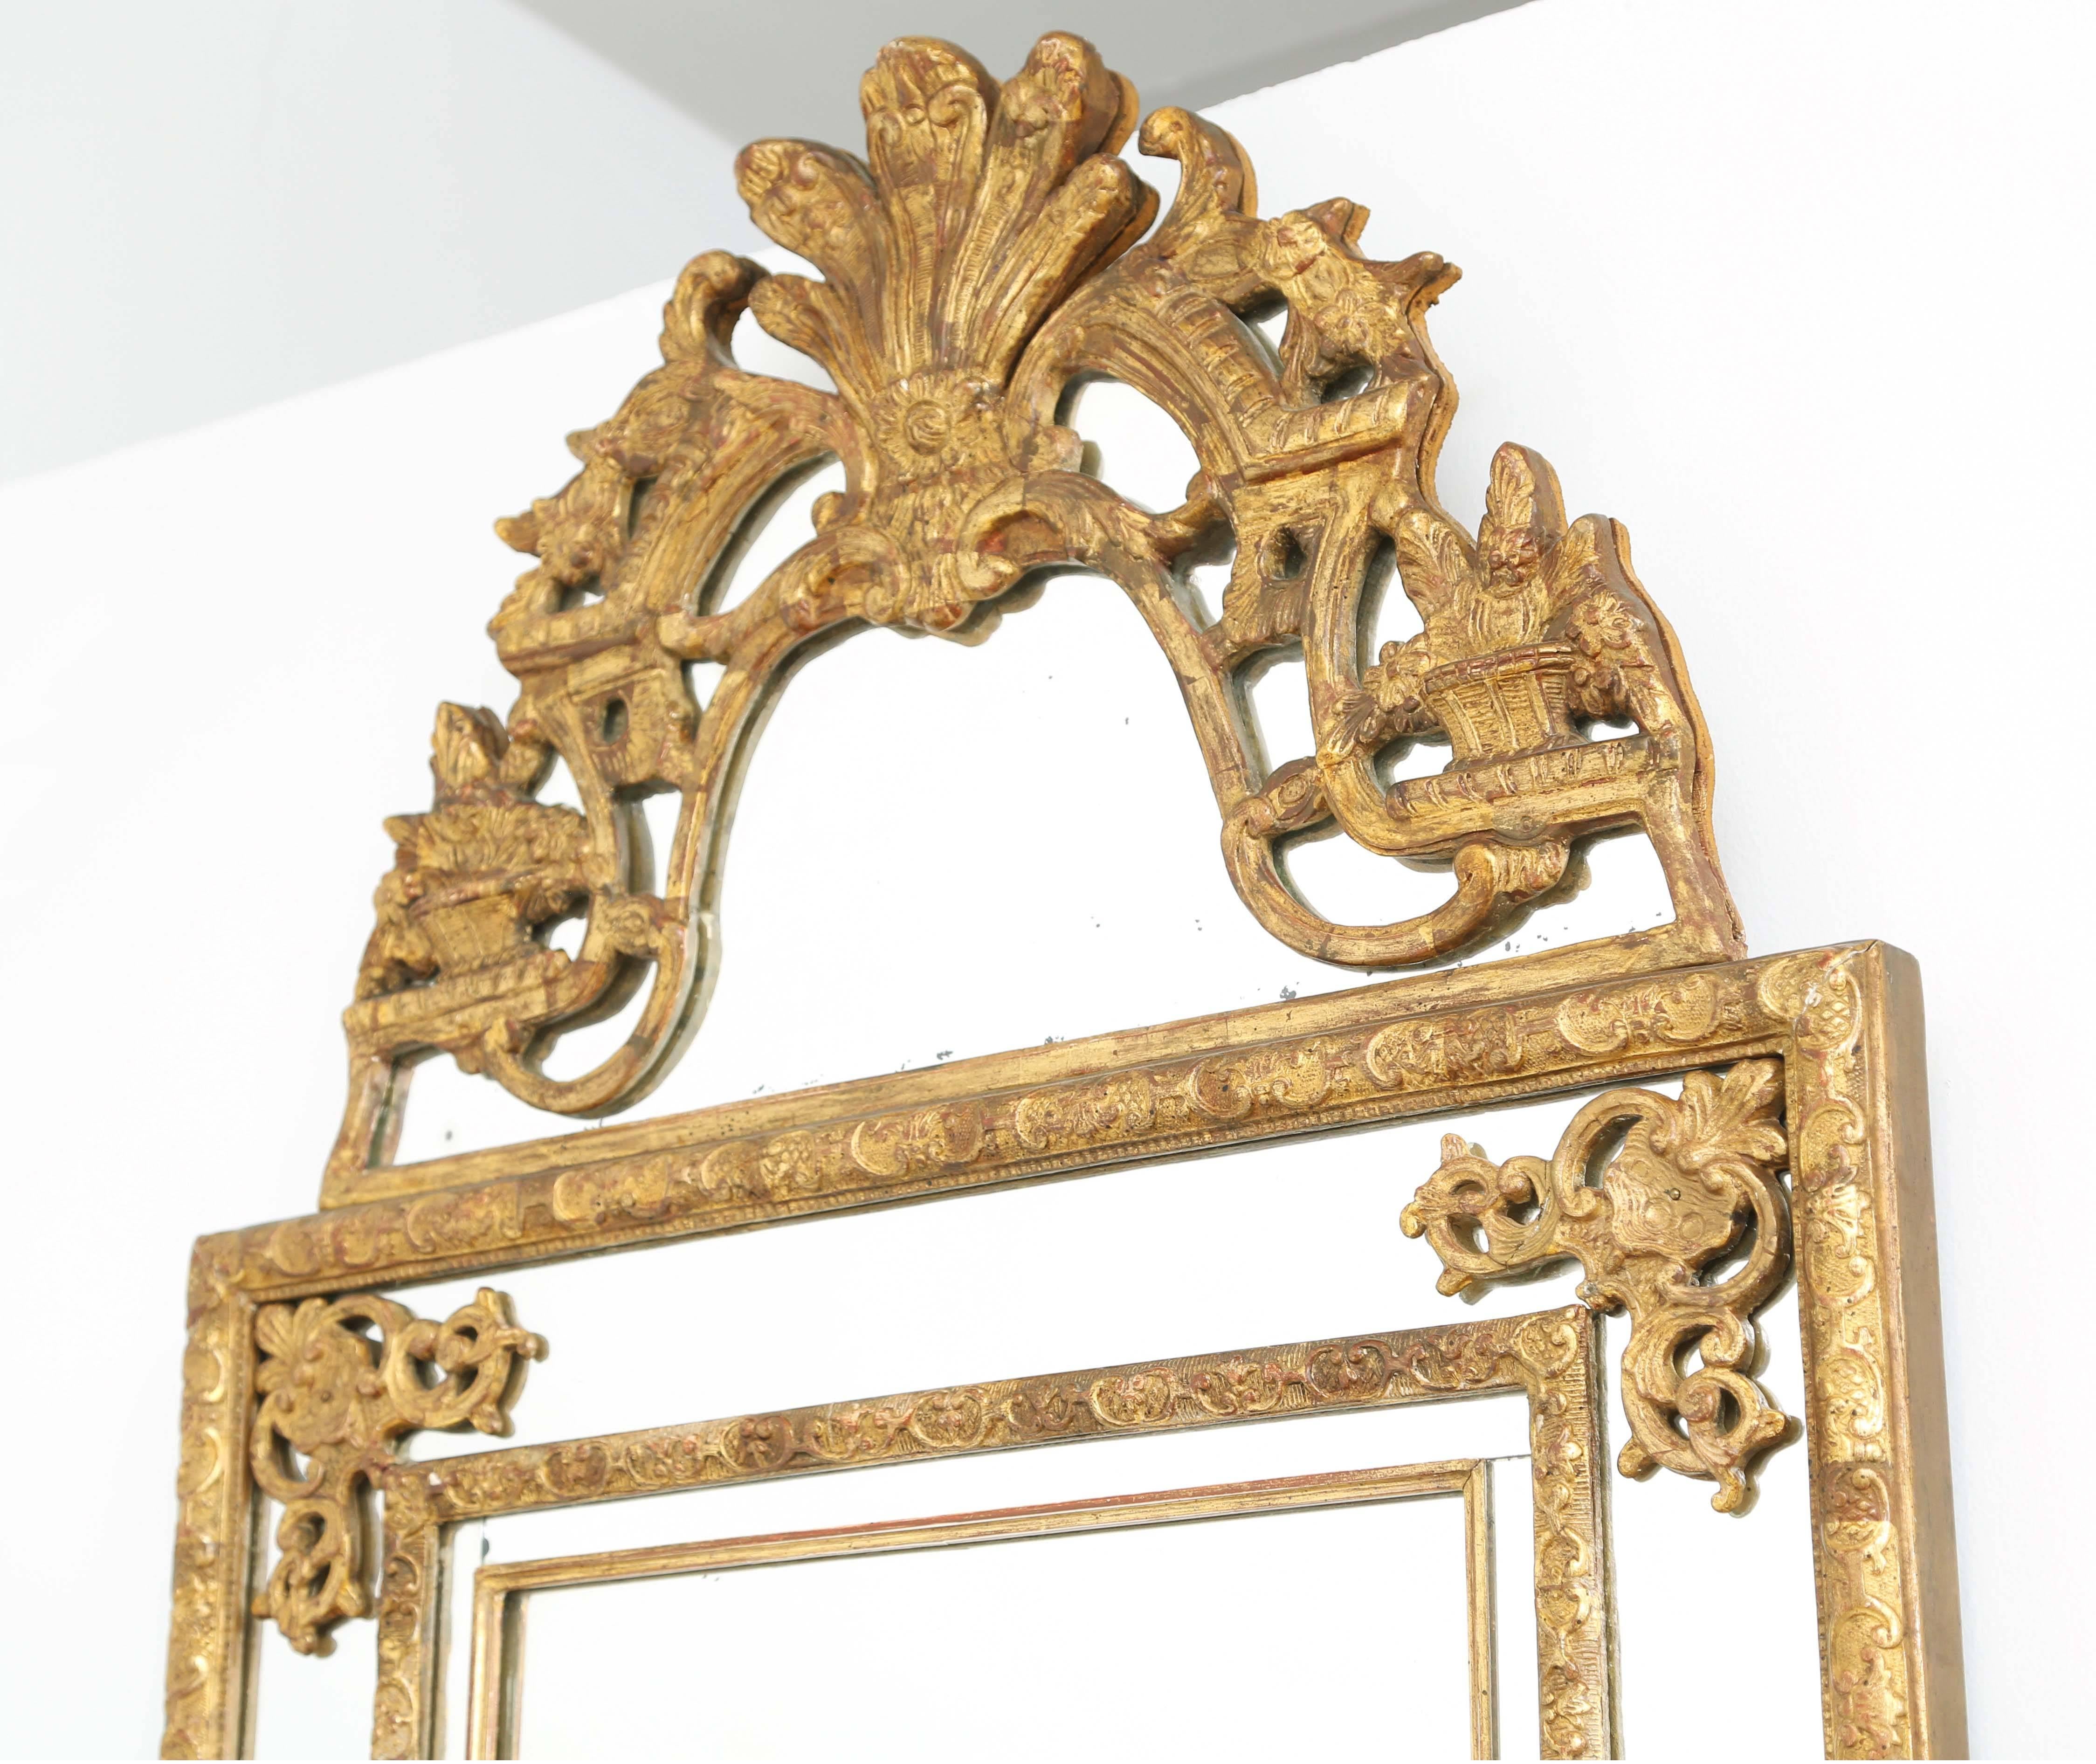 Wandspiegel, aus geschnitztem Goldholz, seine rechteckige Spiegelplatte, in verspiegelten Reliefs und gadrooned Rahmen eingefasst, jede Ecke mit Scrollwork geschmückt, durch Giebel mit Palmette zentriert und flankiert von Blattmotiven